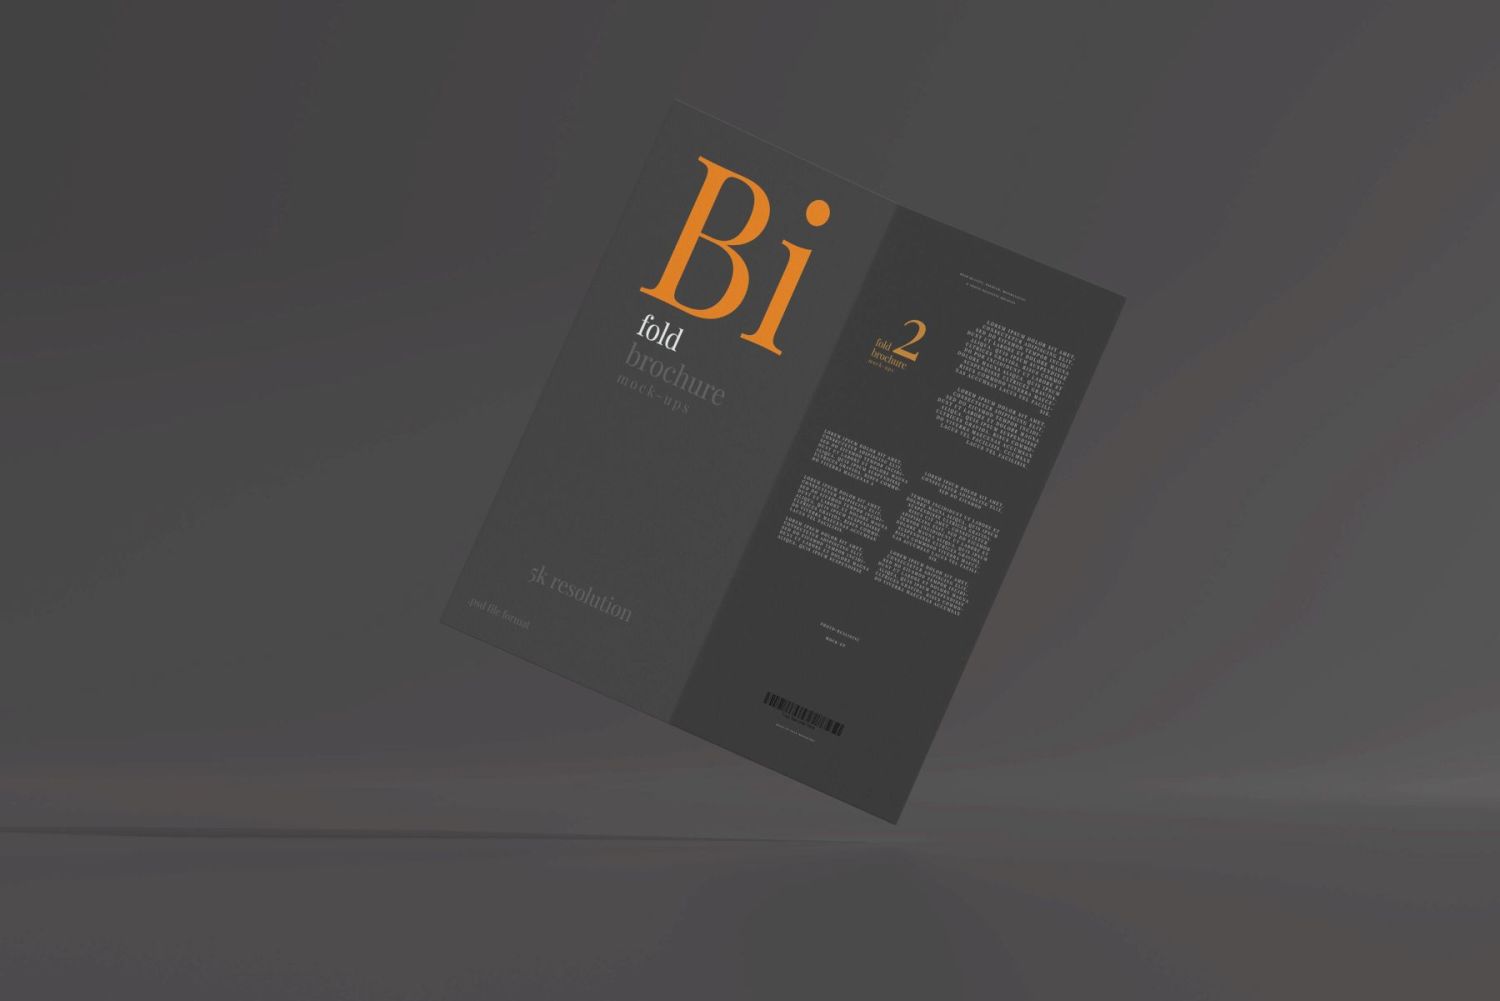 DL 尺寸双折页宣传册样机 Bi Fold DL Brochure Mockups插图30